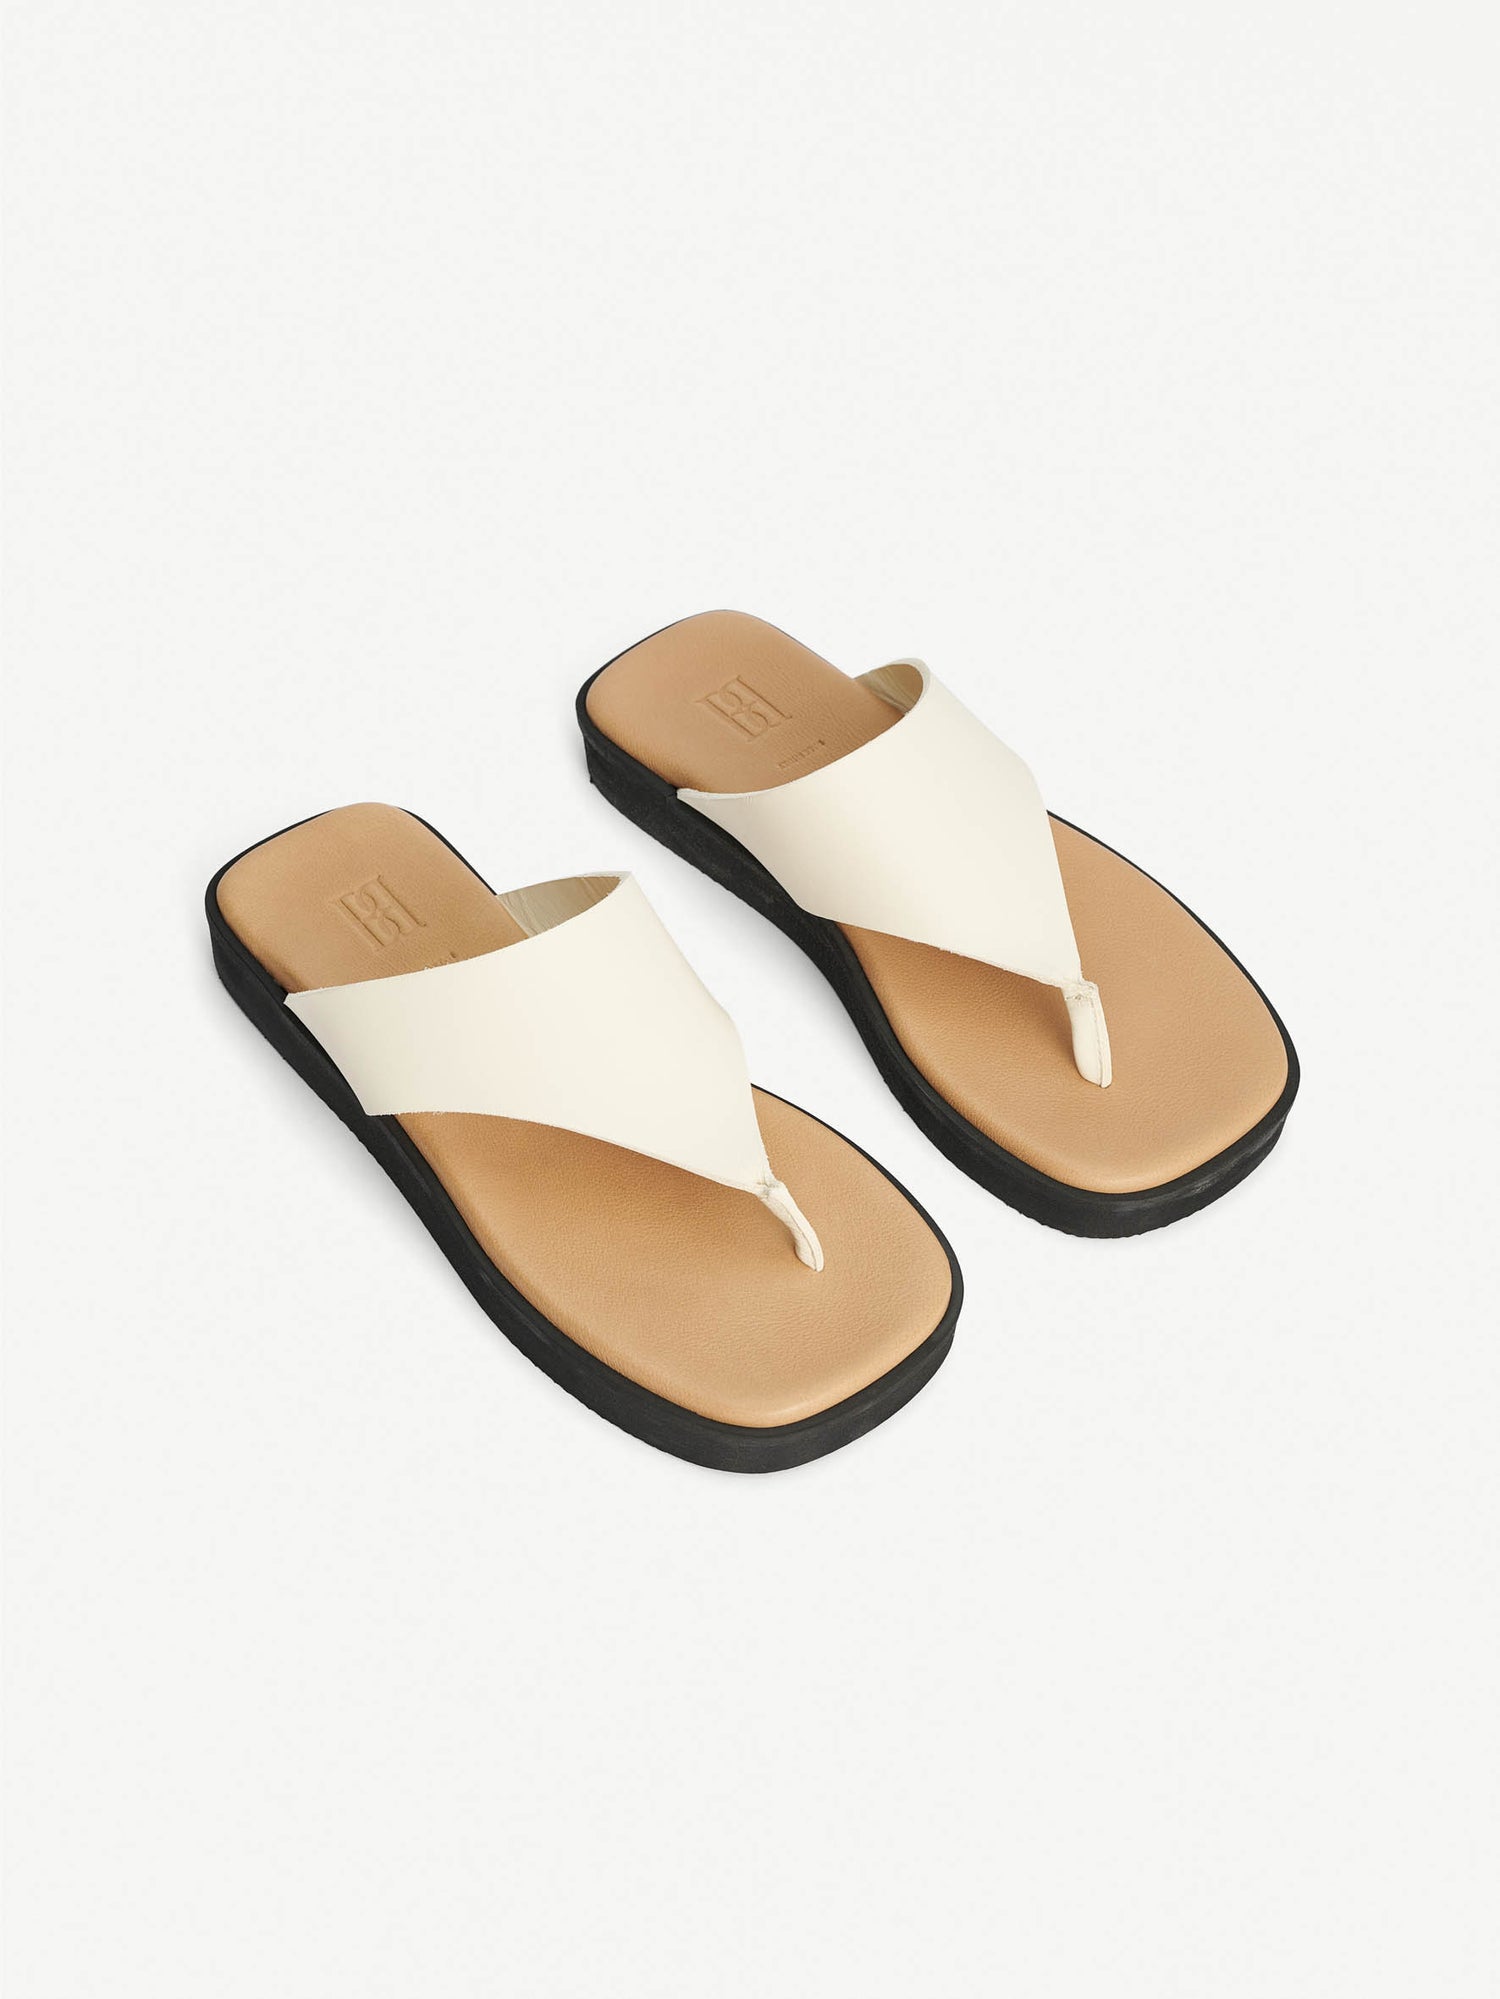 Malene Birger: Marisol flip flop leather sandals, vanilla cream